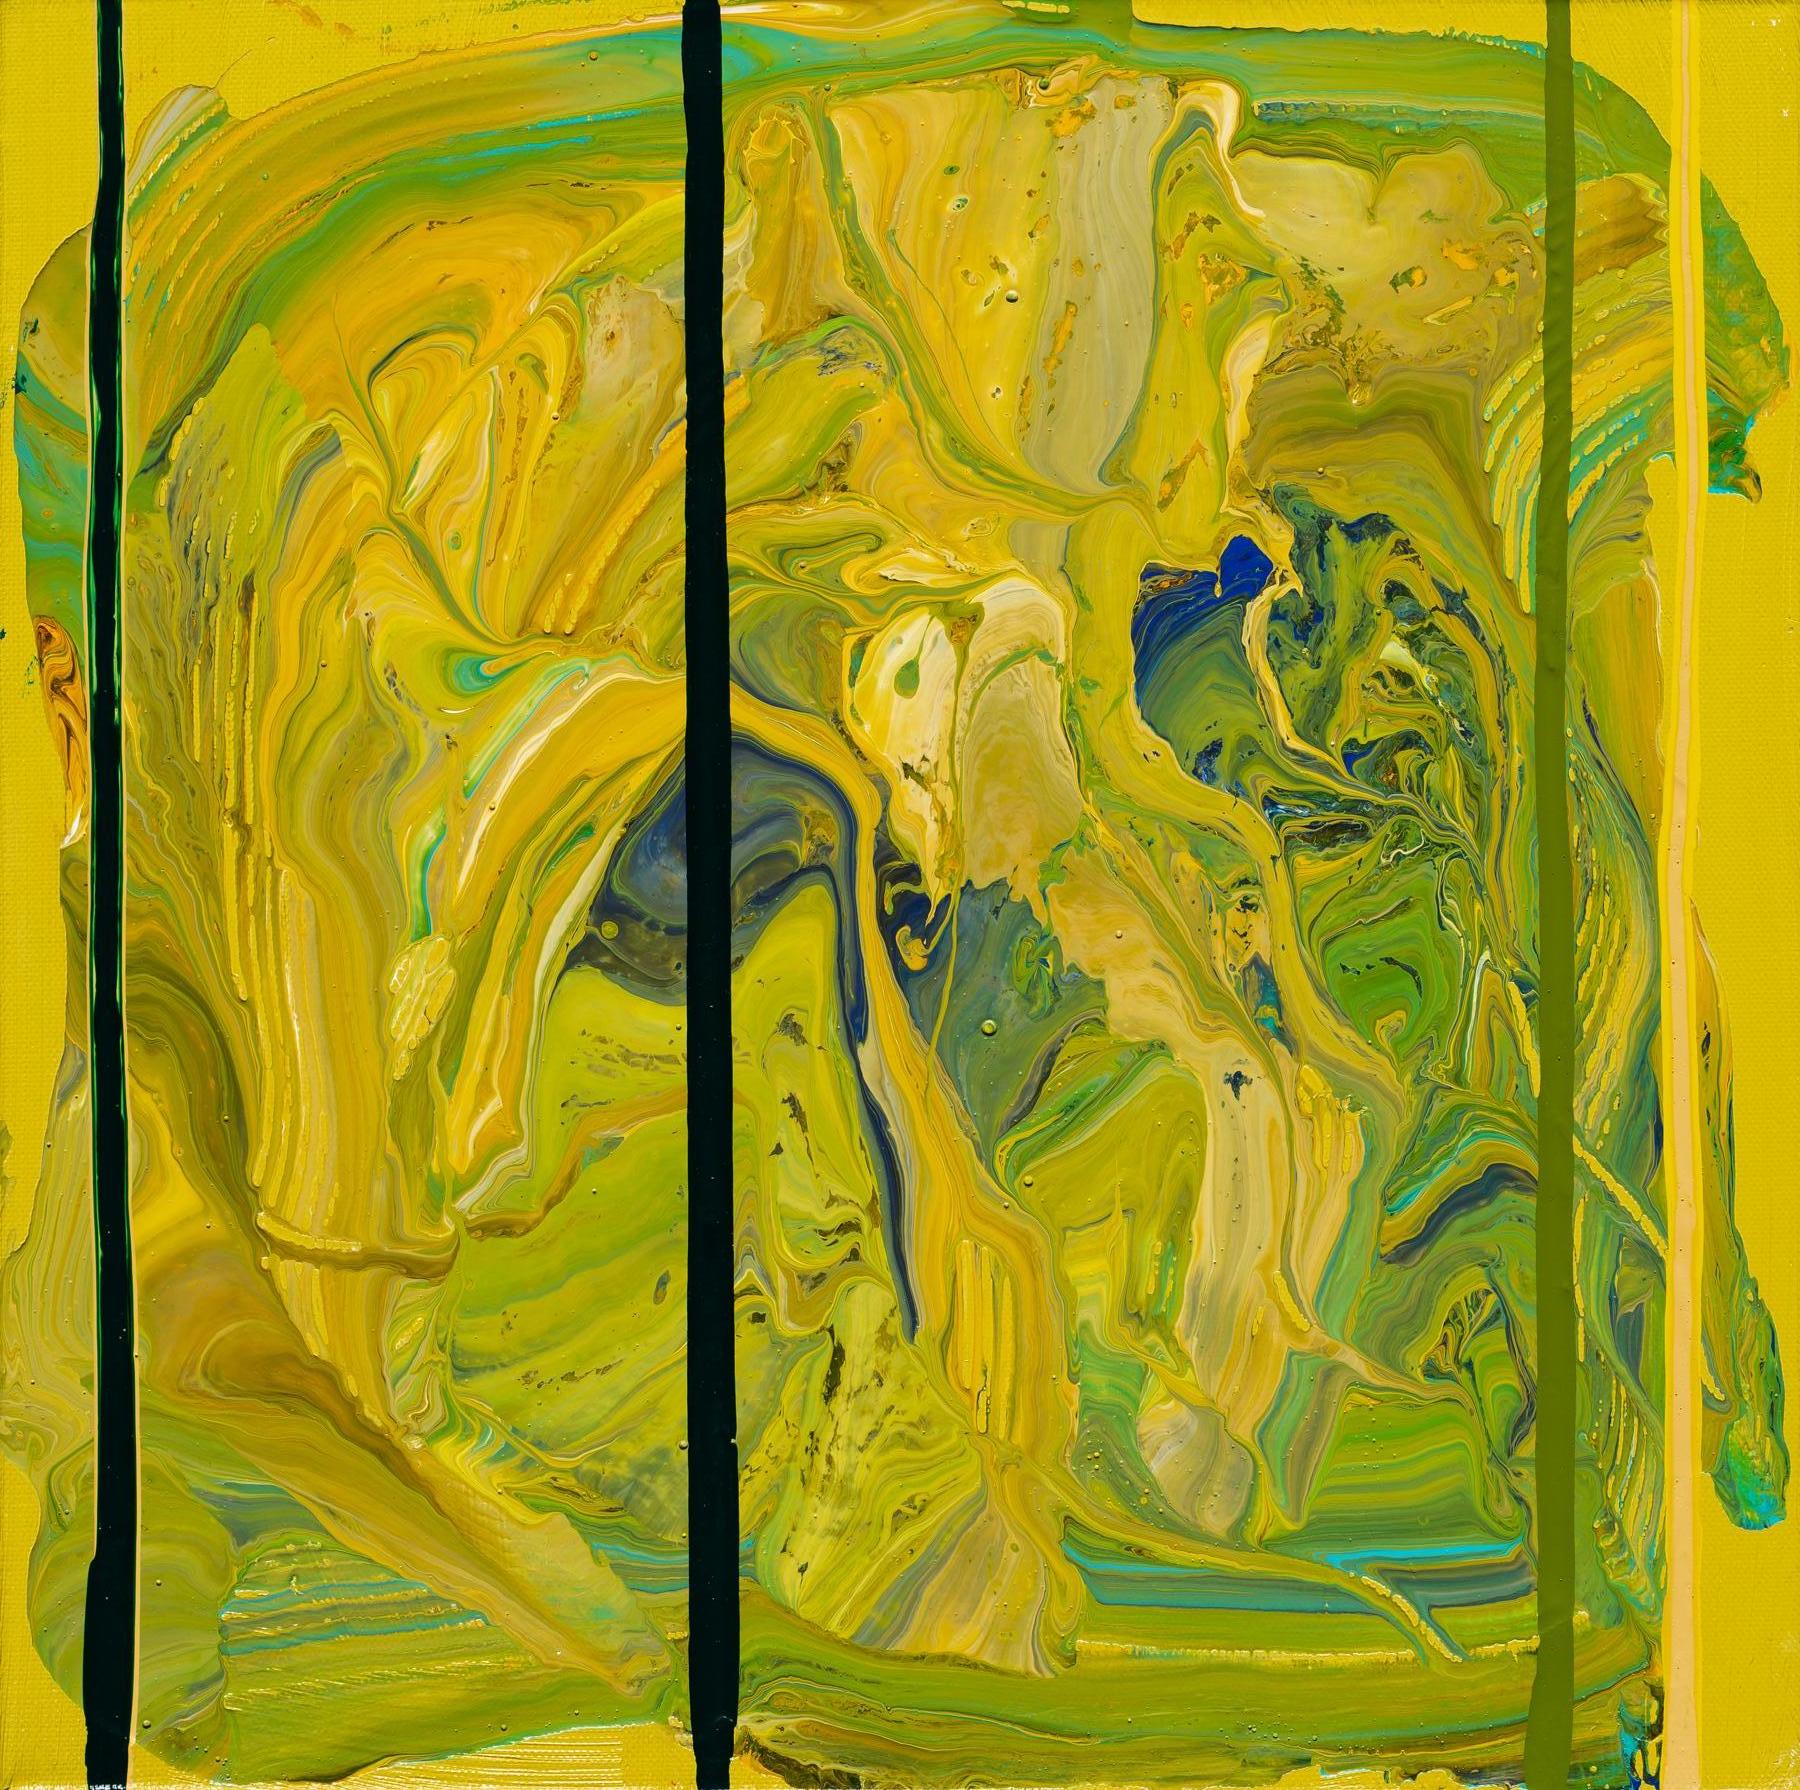 Abstract Painting Dennis Alter - Moss Hope - peinture à l'huile abstraite contemporaine en vert avec jaune et bleu